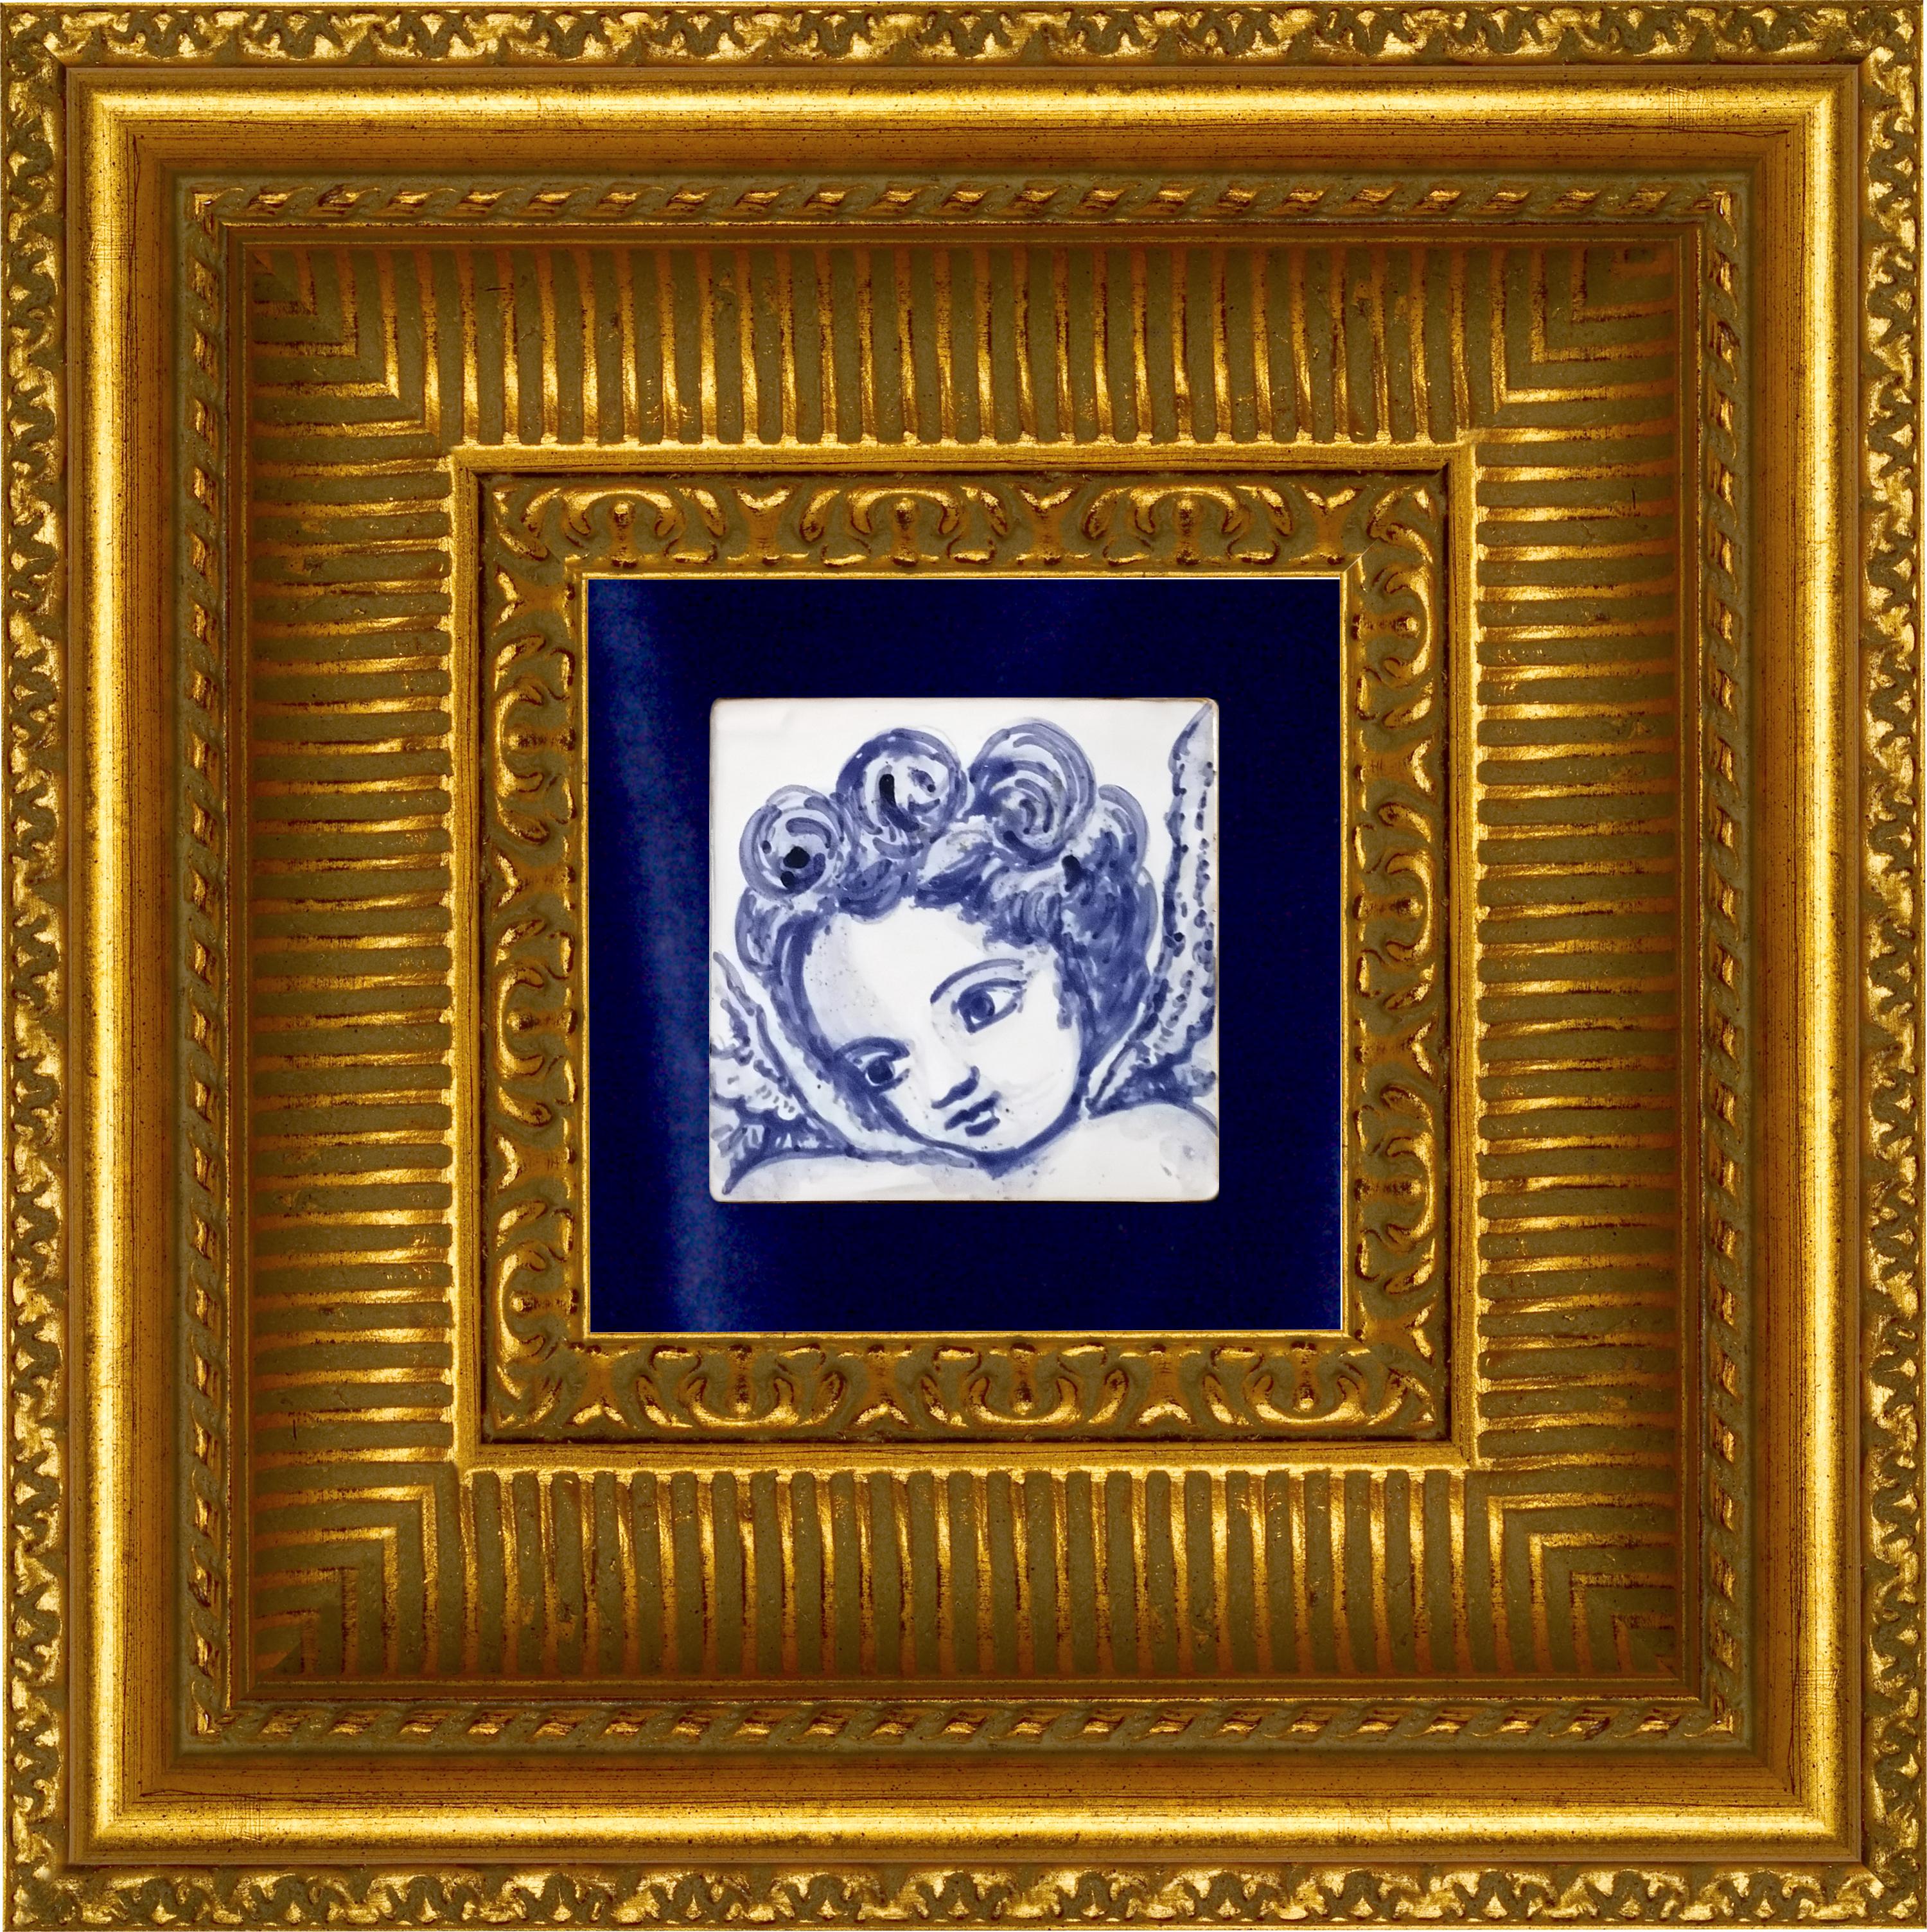 Wunderschöne blaue handbemalte barocke Putte oder Engel im Stil des 18. Jahrhunderts Portugiesische Keramikfliese/Azulejo
Die in Kobaltblau auf Weiß gemalte Fliese aus dem typischen Portugal des 18. Jahrhunderts begründete den Geschmack für